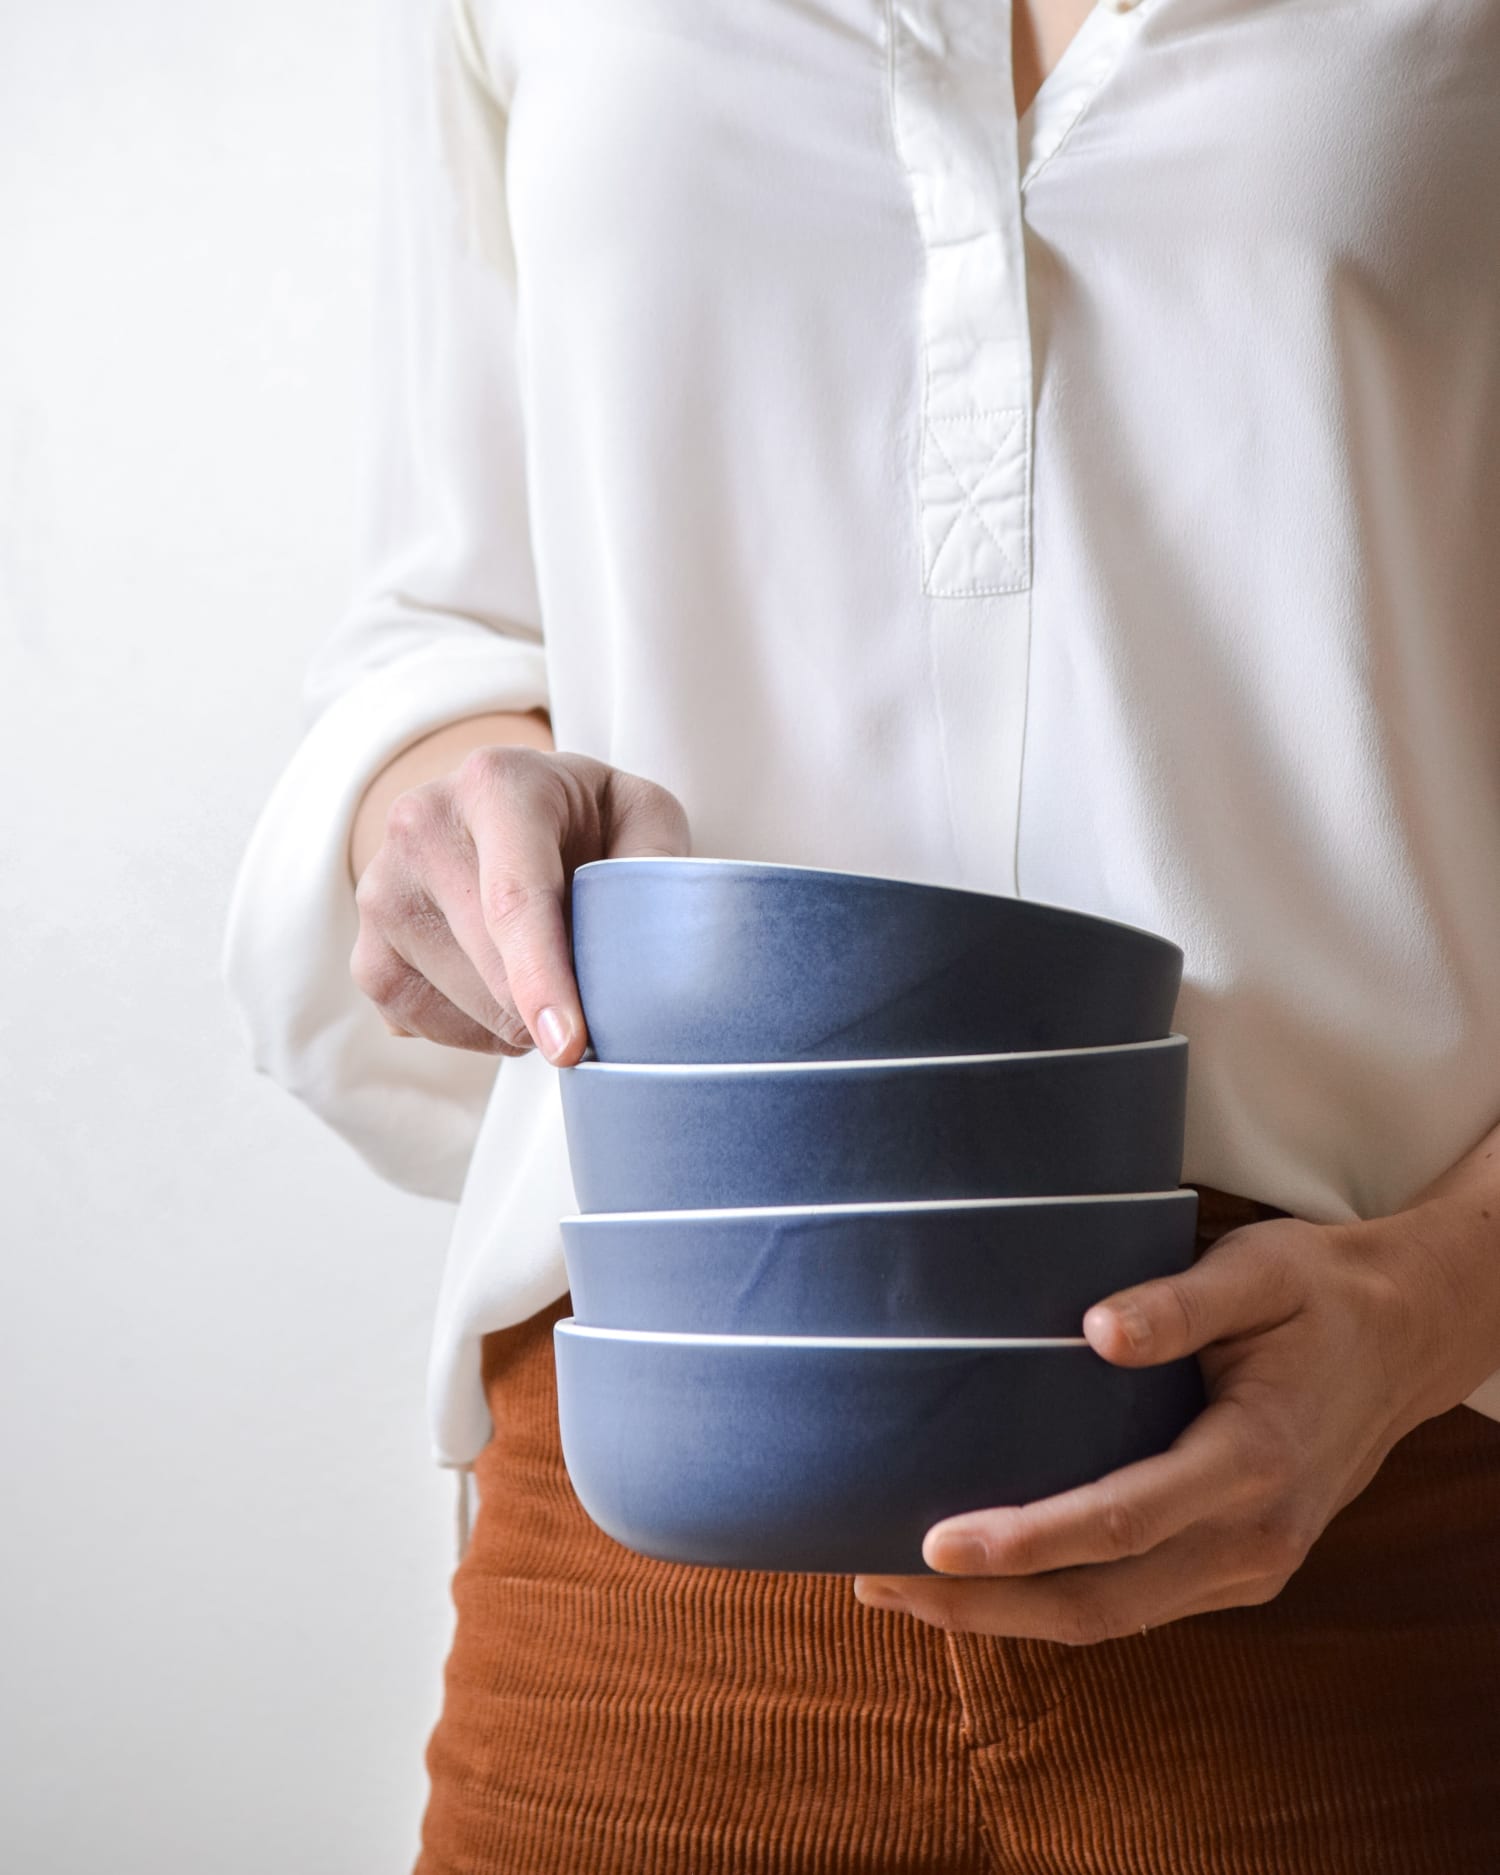 Blue ceramic bowls